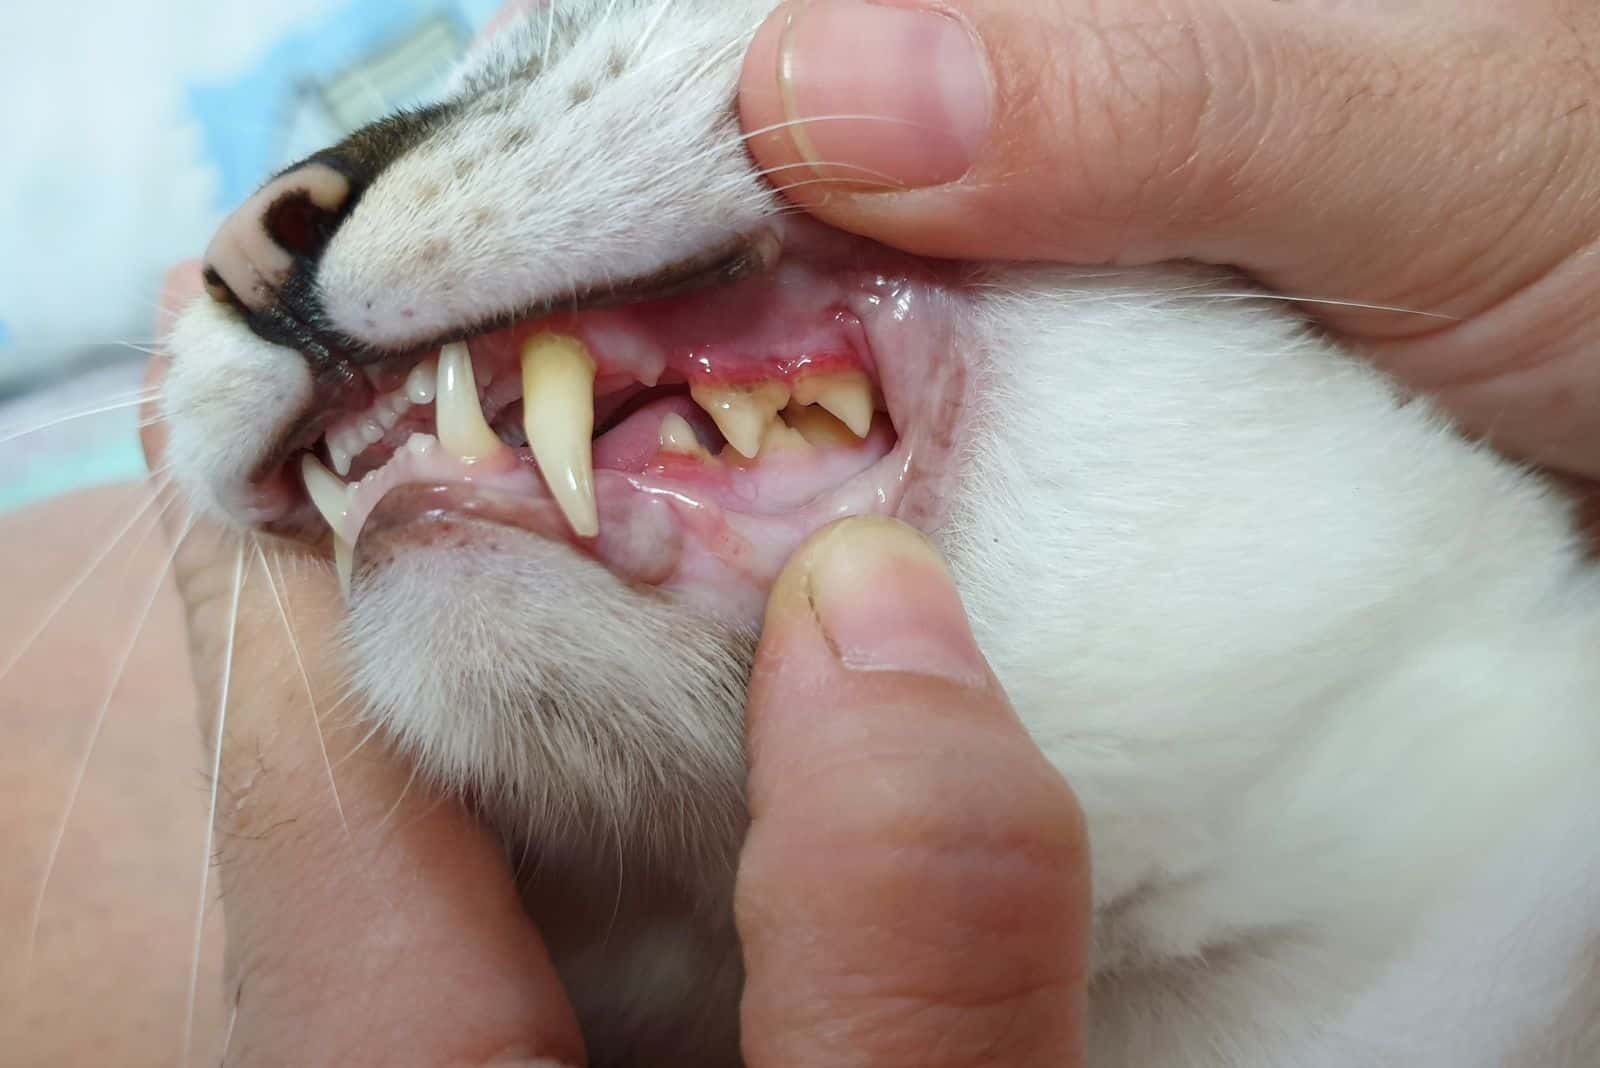 a man examines a cat's teeth